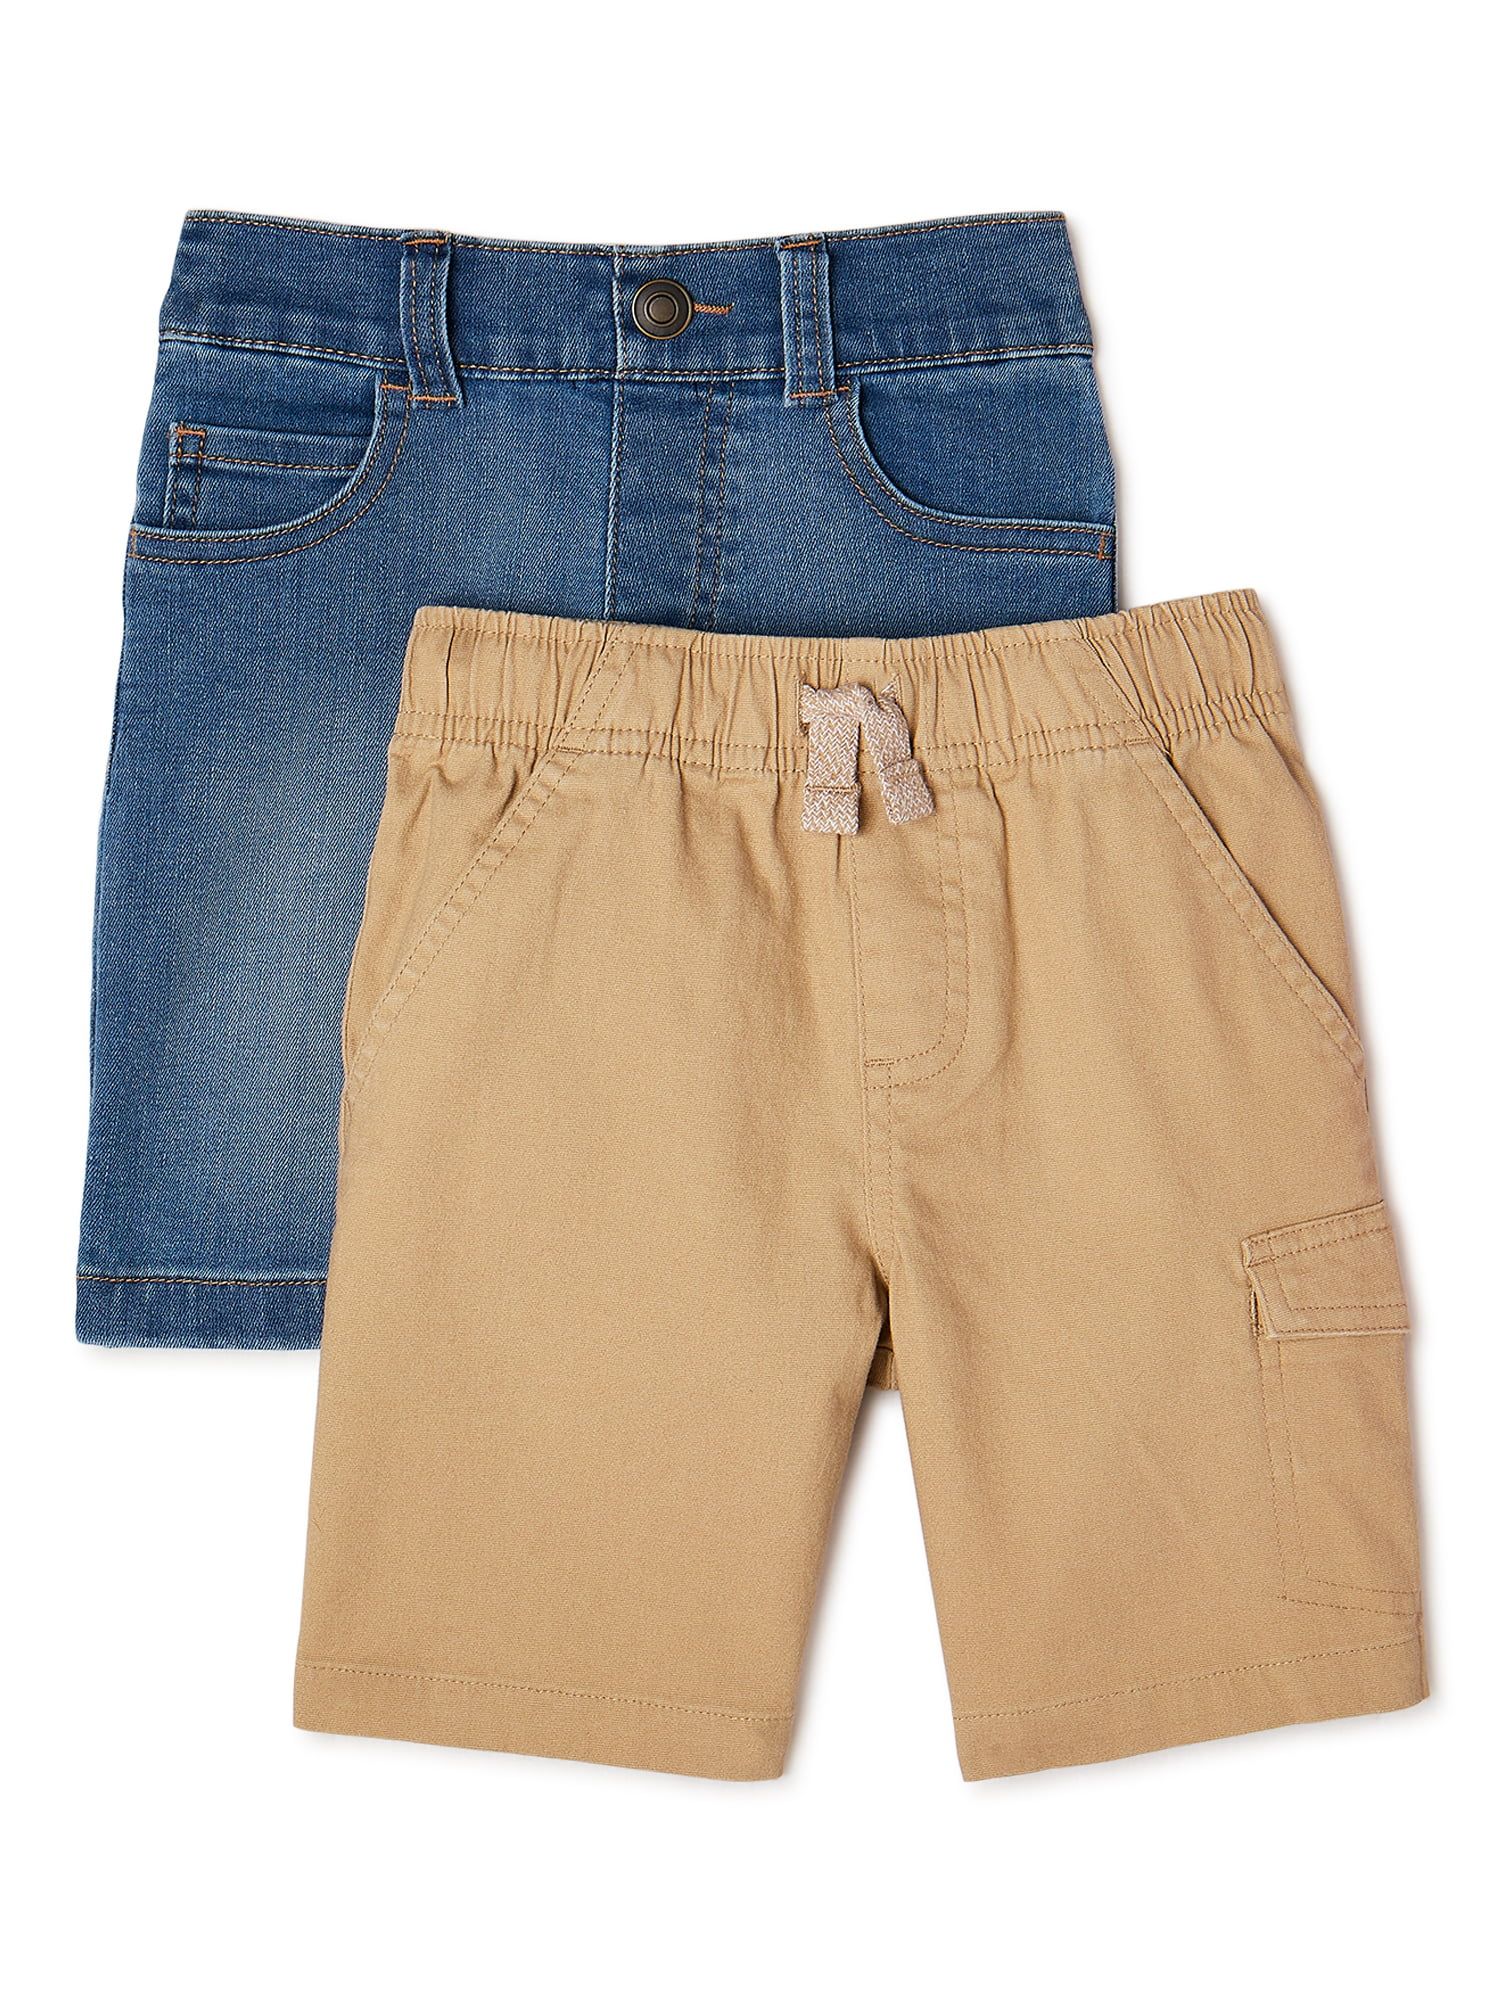 365 Kids From Garanimals Boys Denim & Cargo Shorts, 2-Piece, Sizes 4-10 | Walmart (US)